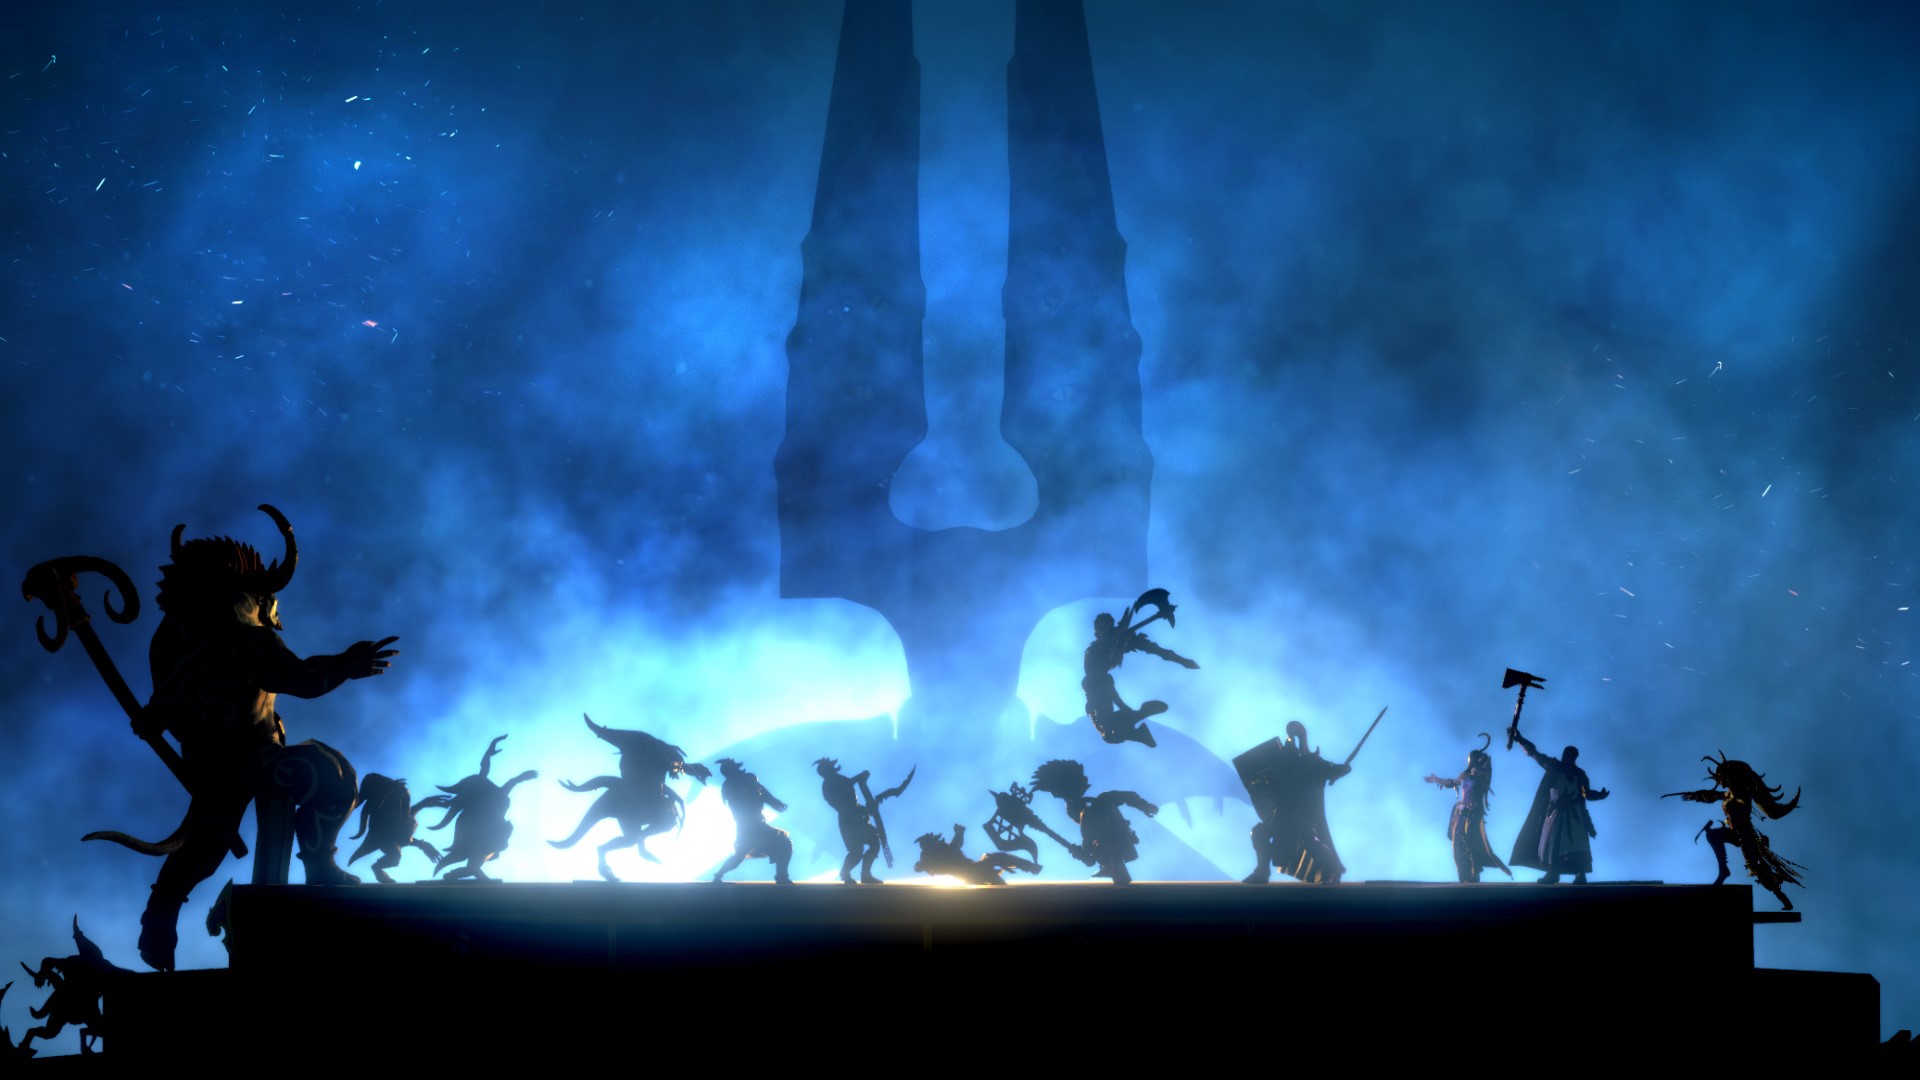 เกมกลยุทธ์มือถือที่ดีที่สุด: Warhammer Quest: Silver Tower ภาพแสดงโครงร่างของนักรบและสัตว์ประหลาดจำนวนหนึ่งในความมืด